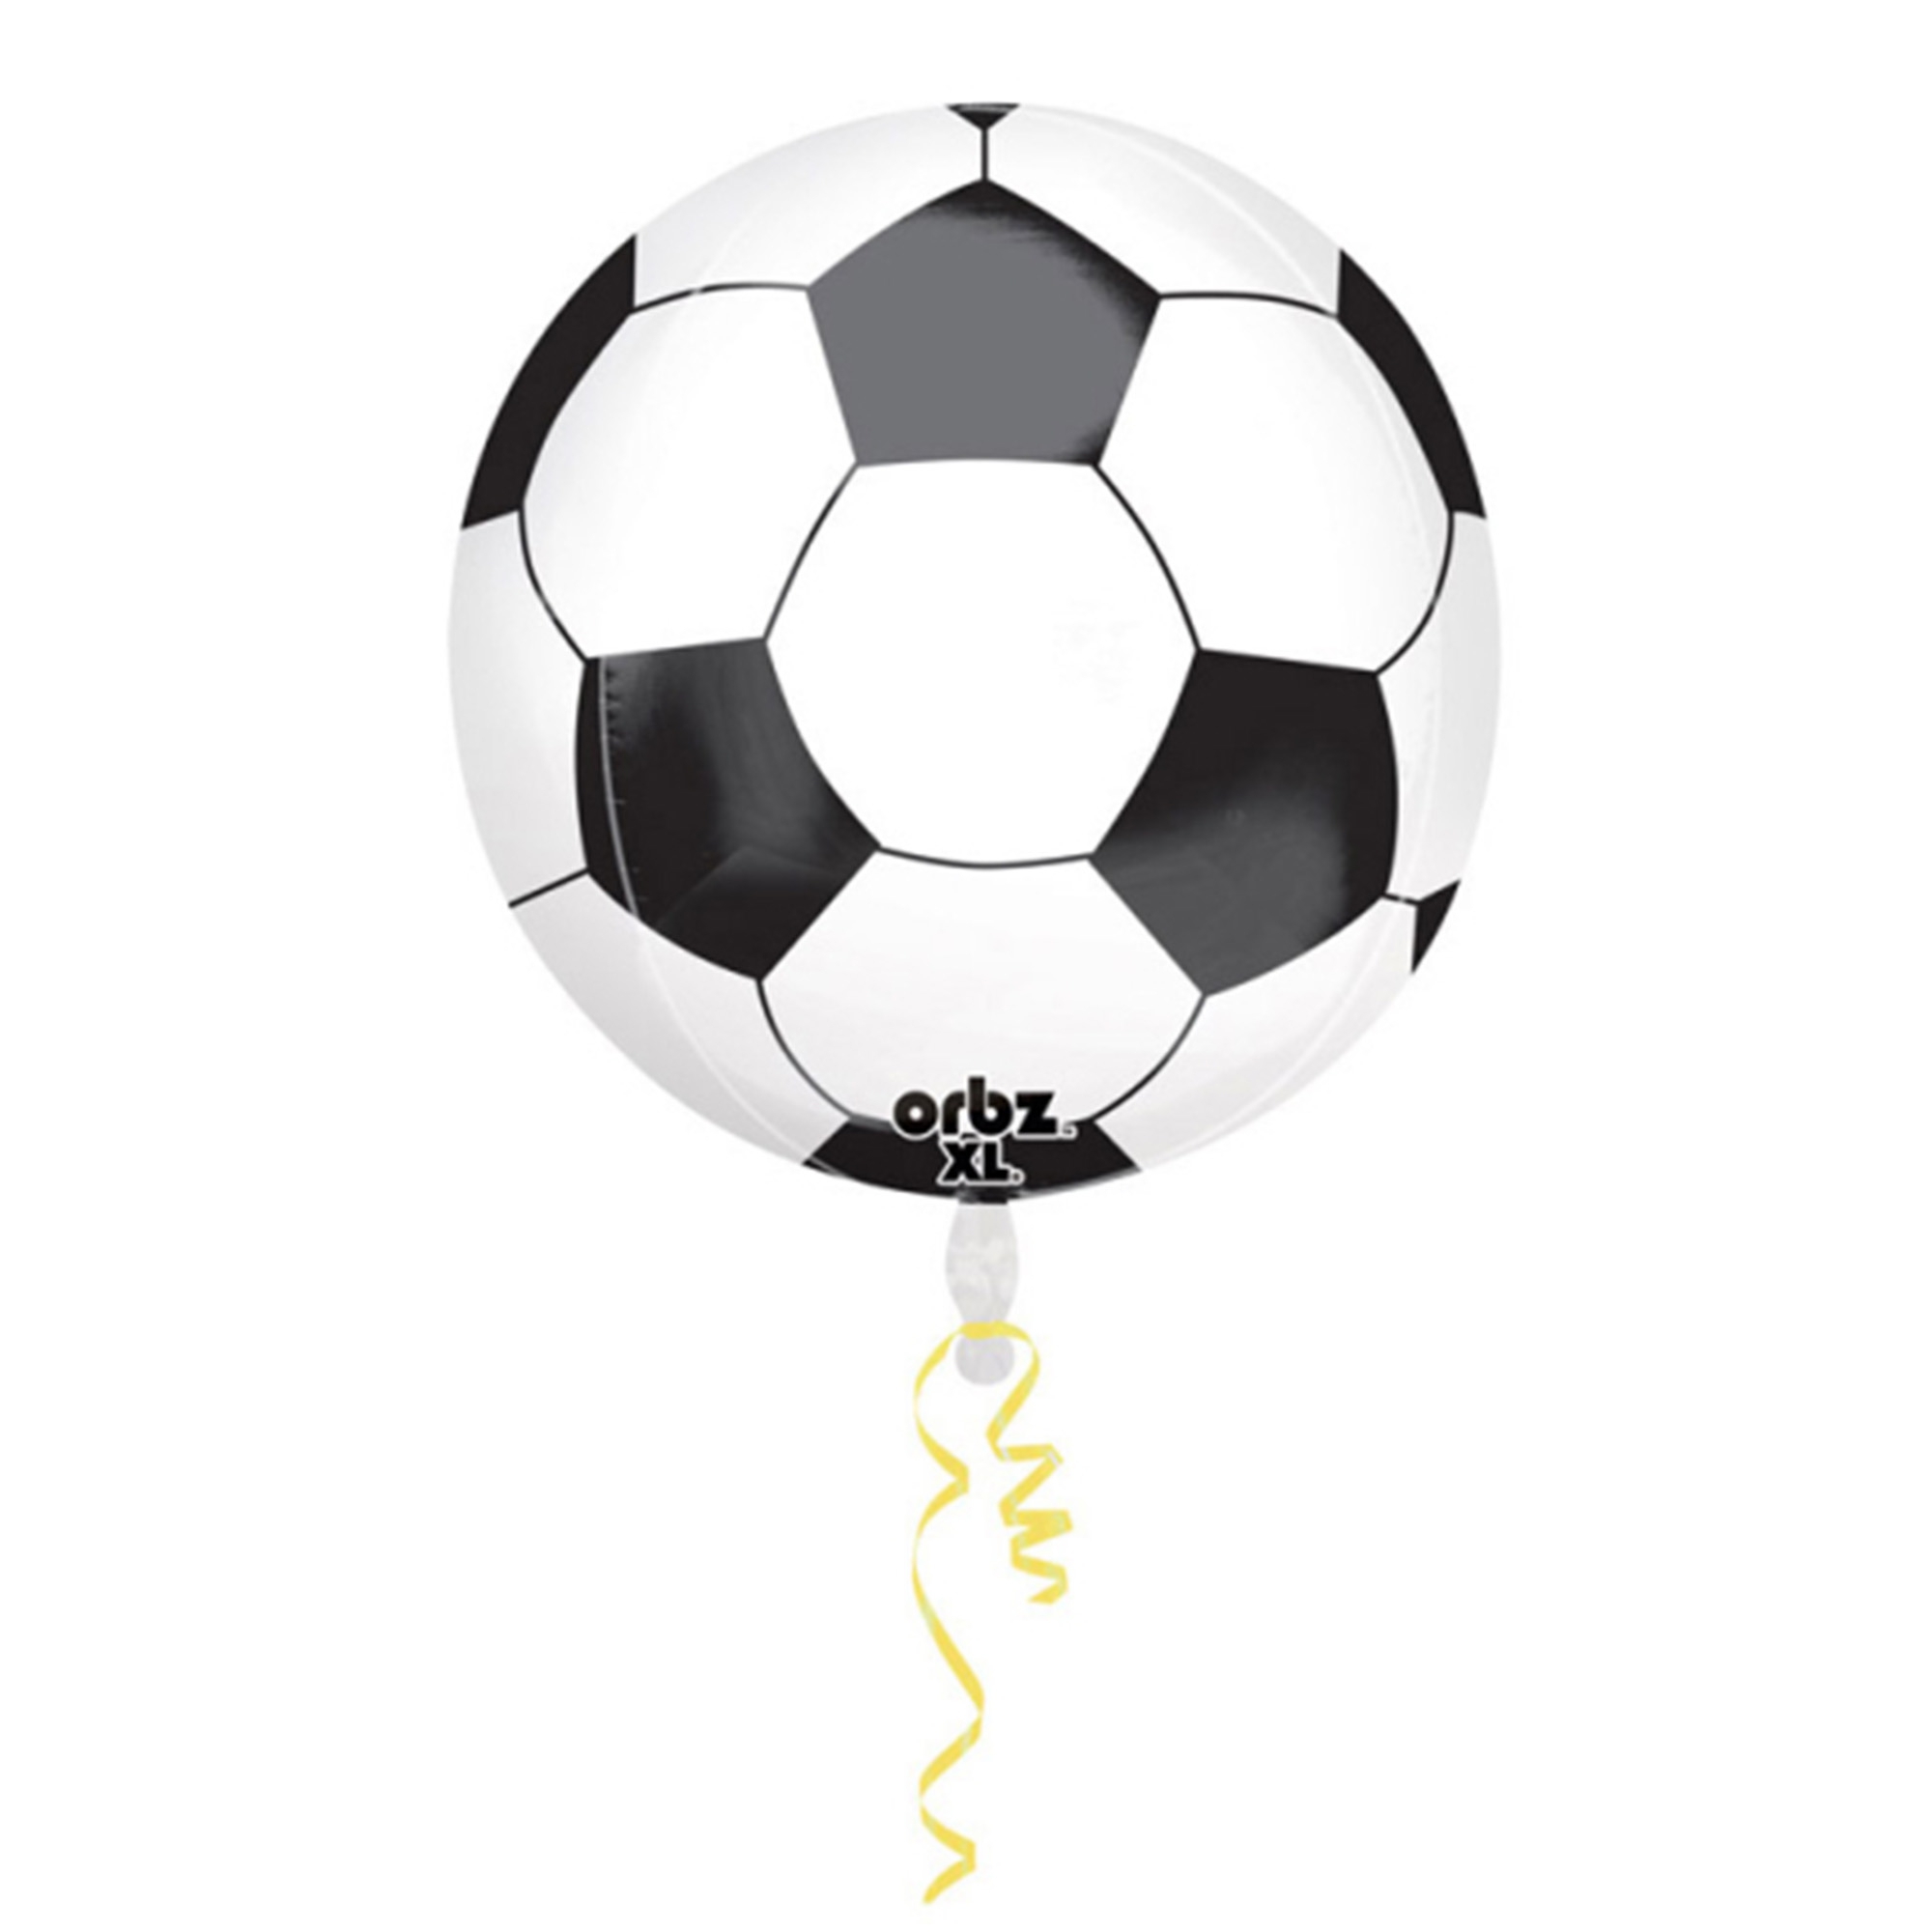 Orbz Ballon Fußball 40cm